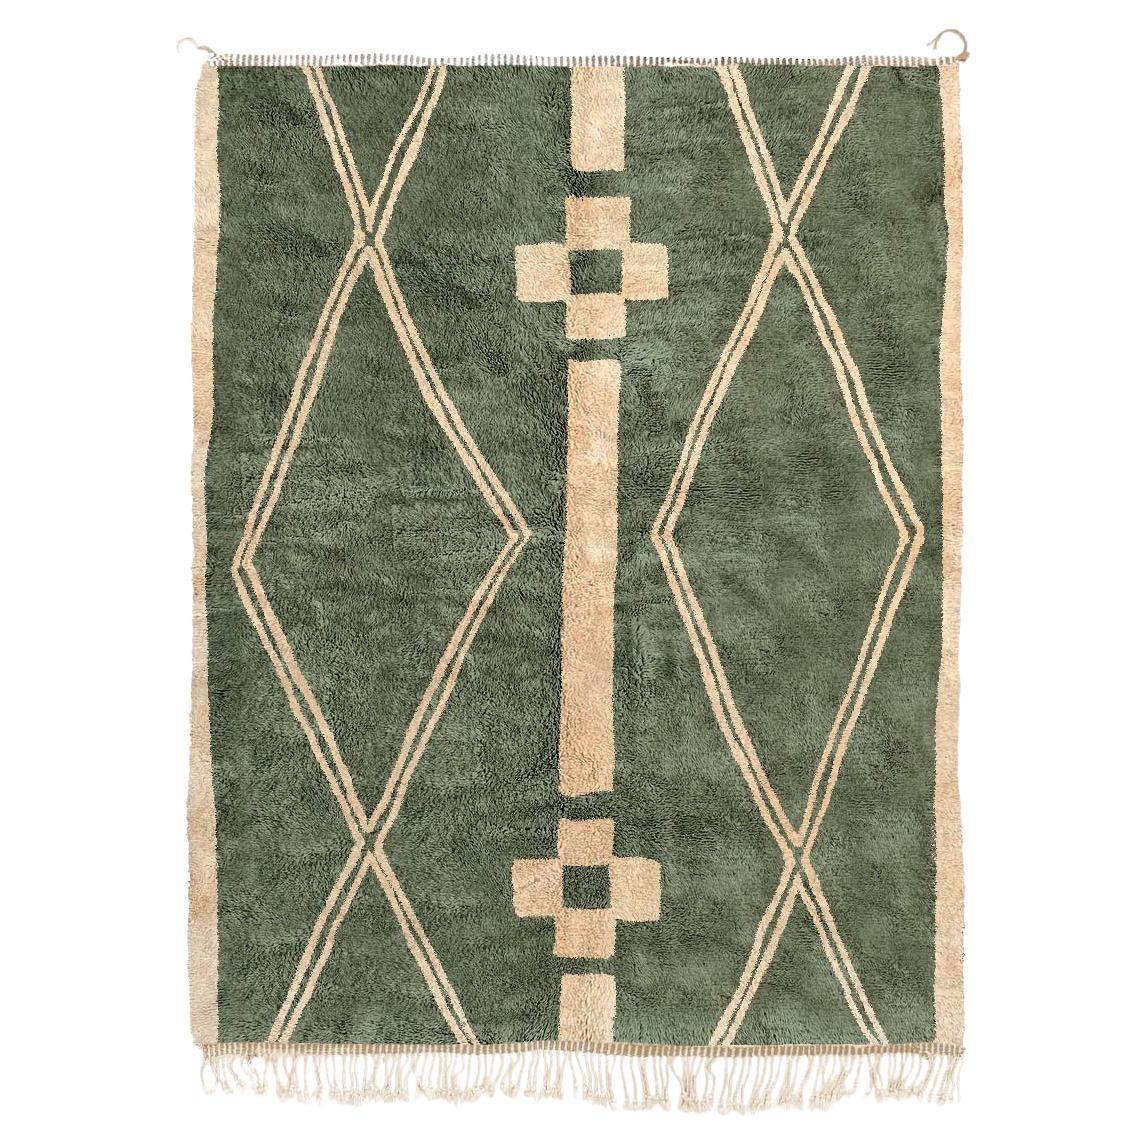 Tapis berbère marocain Beni Mrirt, motif tribal vert, fait sur mesure